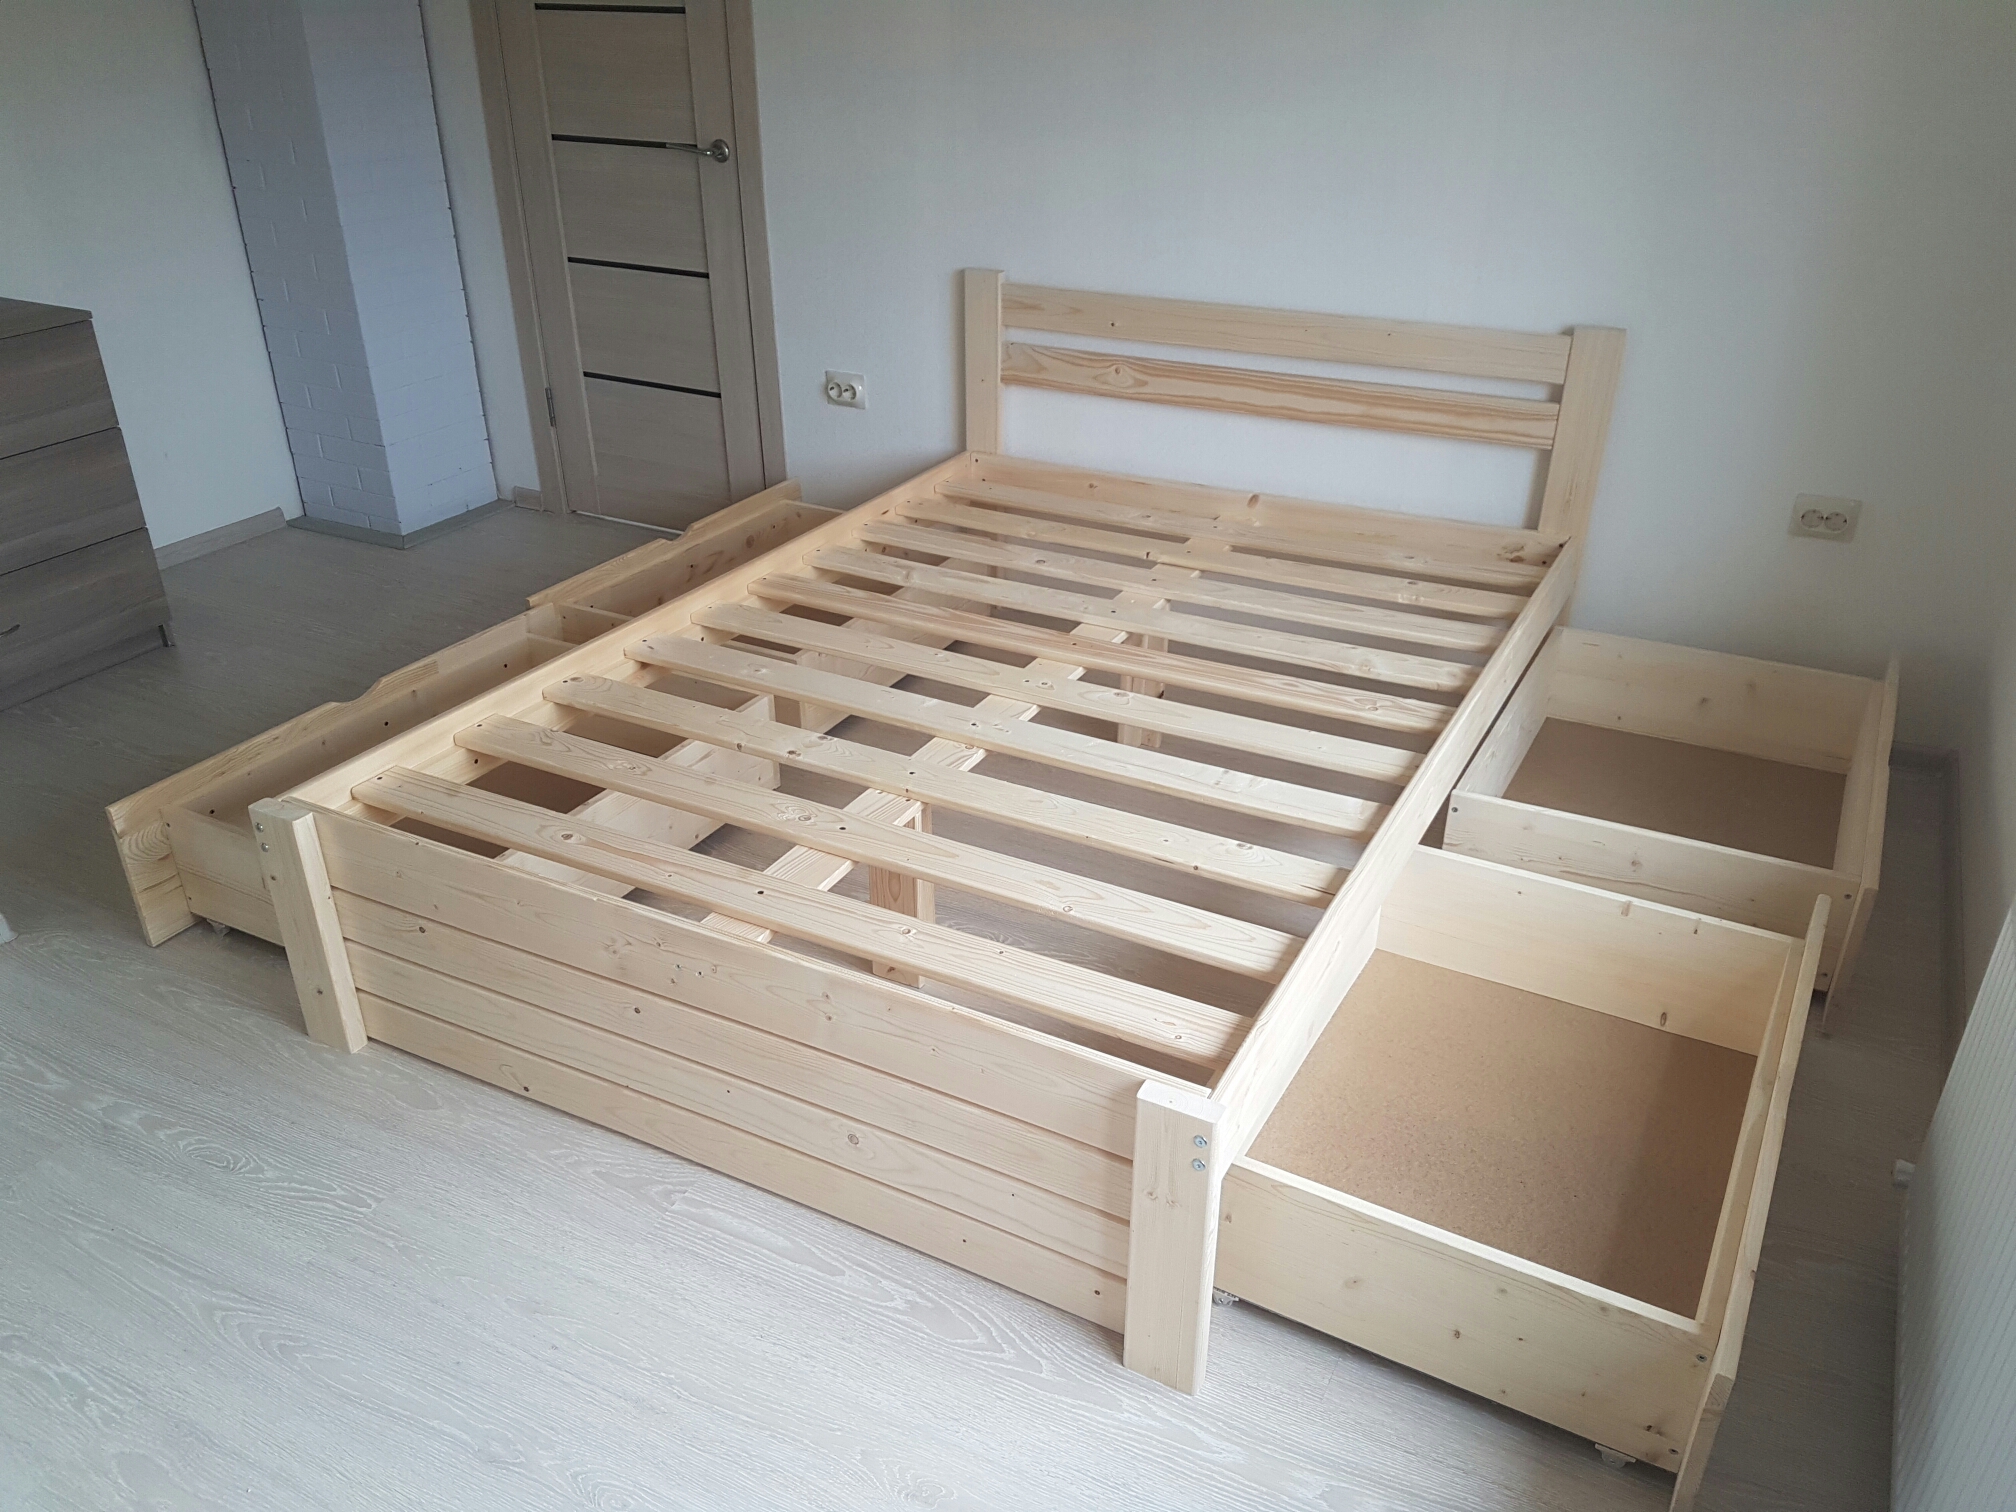 Деревянная кровать "Классик" с четырьмя выдвижными ящиками и зашитым изножьем